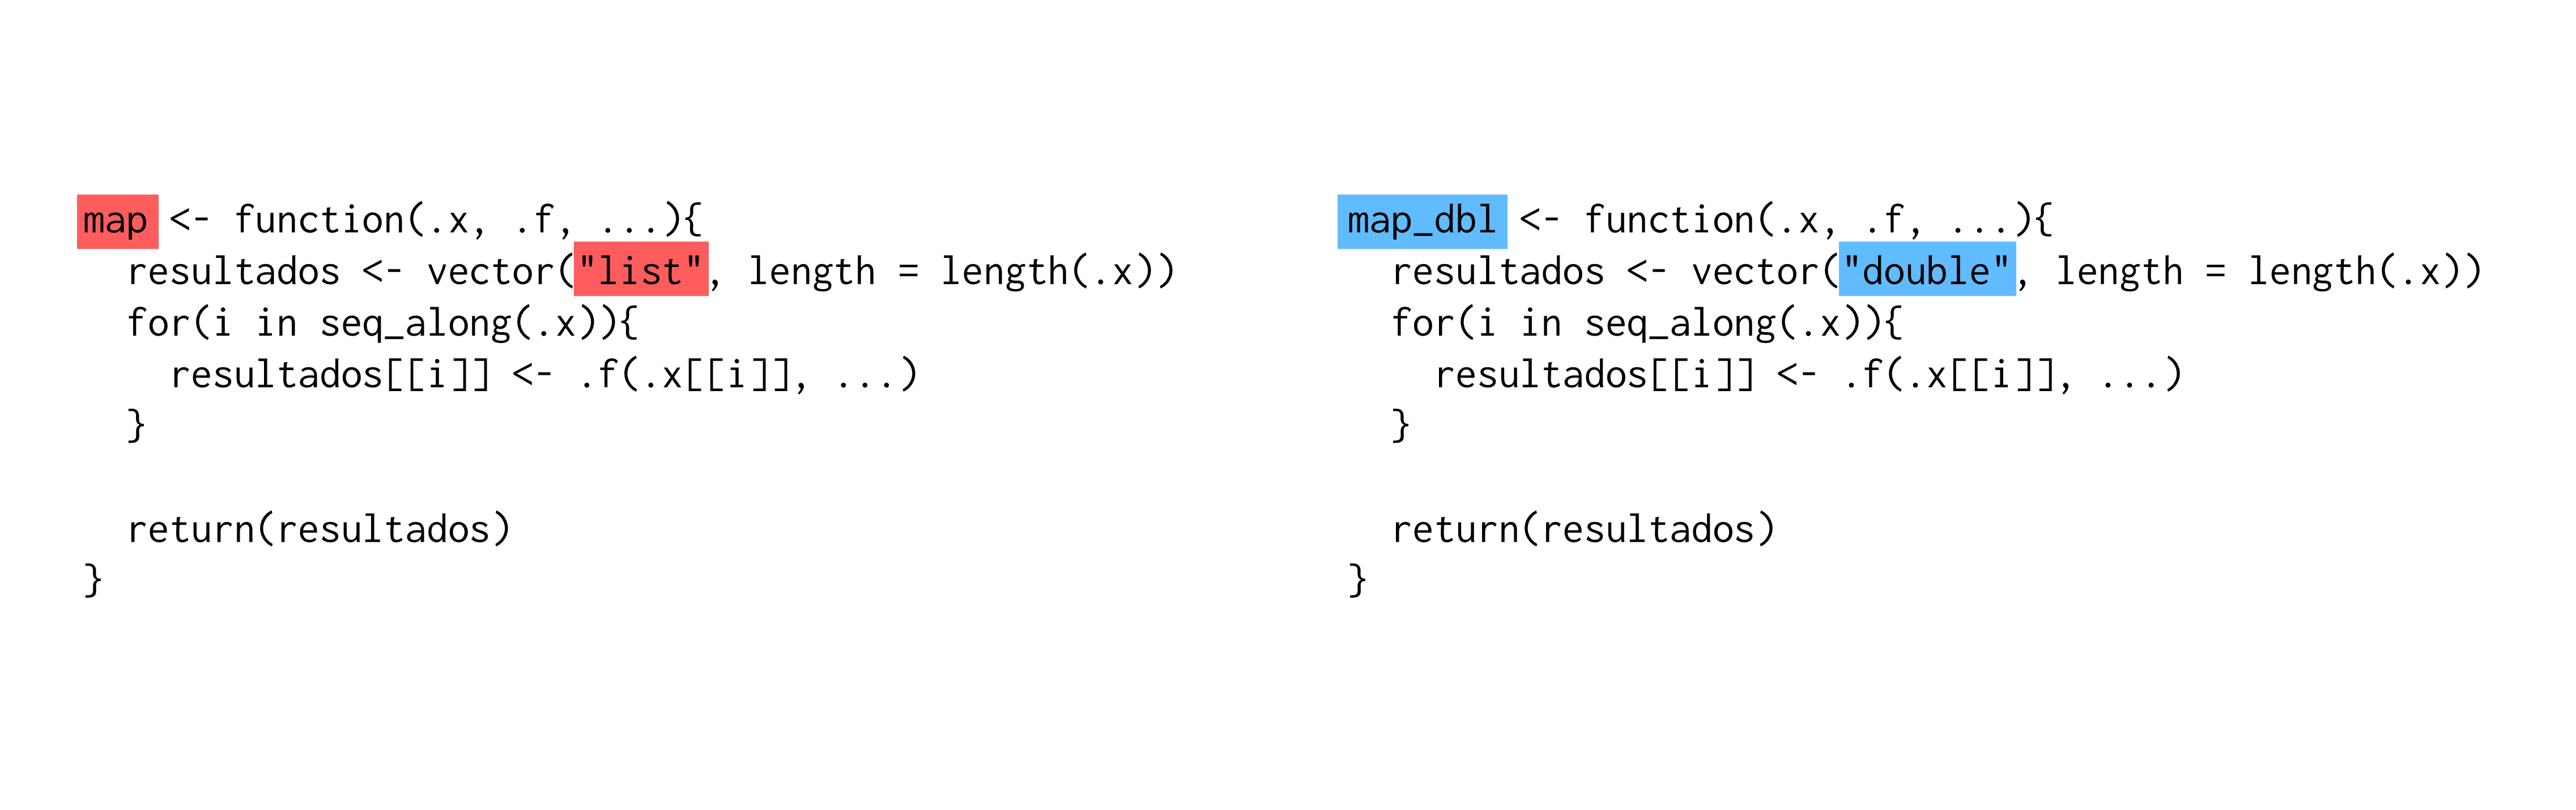 Diferenças entre as definições das funções `map`